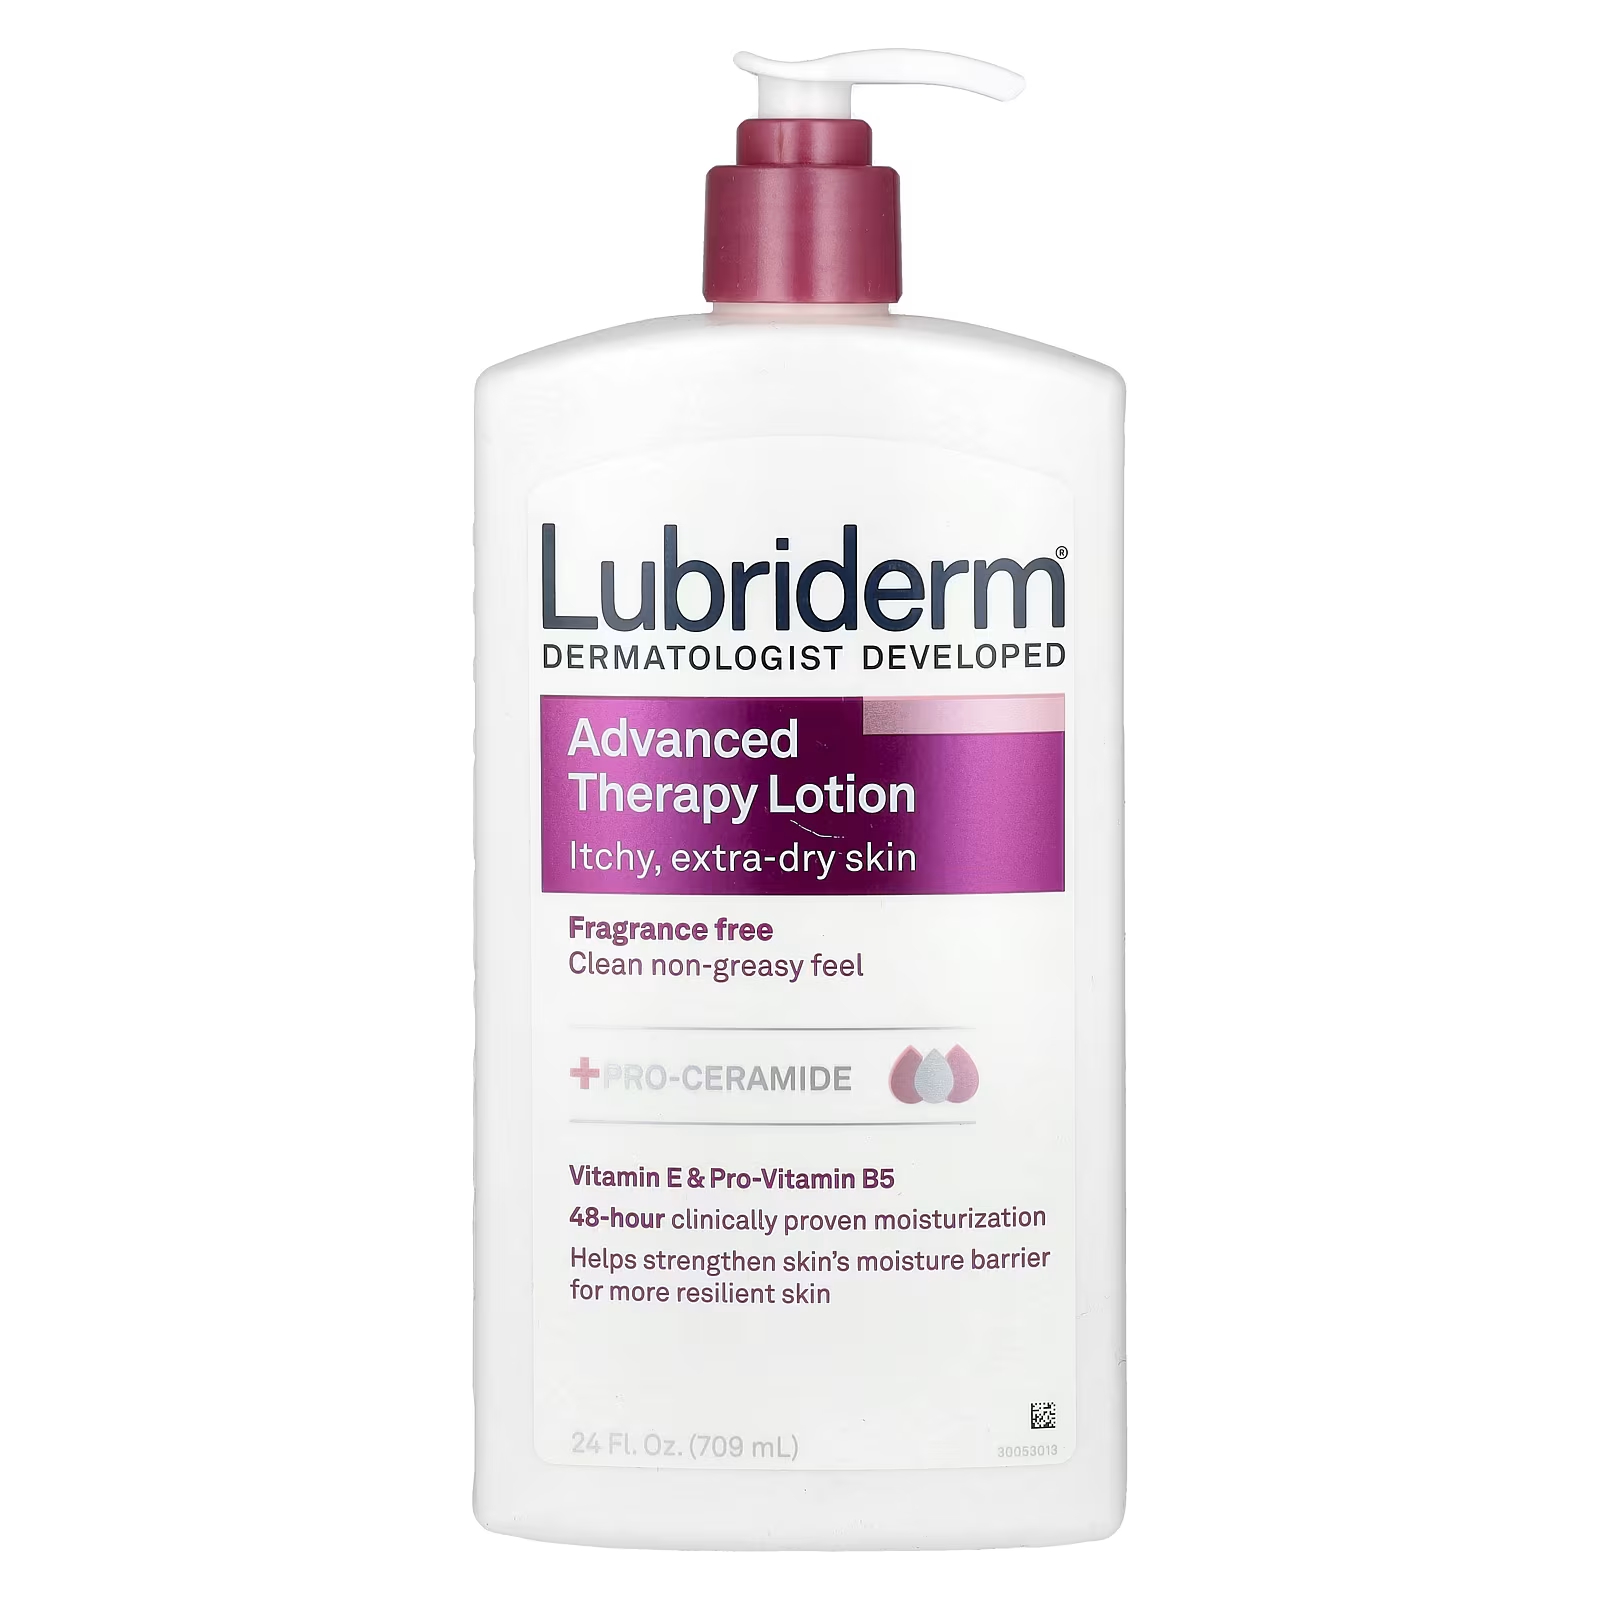 Lubriderm Advanced Therapy Lotion зуд для сверхсухой кожи, без ароматизаторов, 24 жидких унции (709 мл)